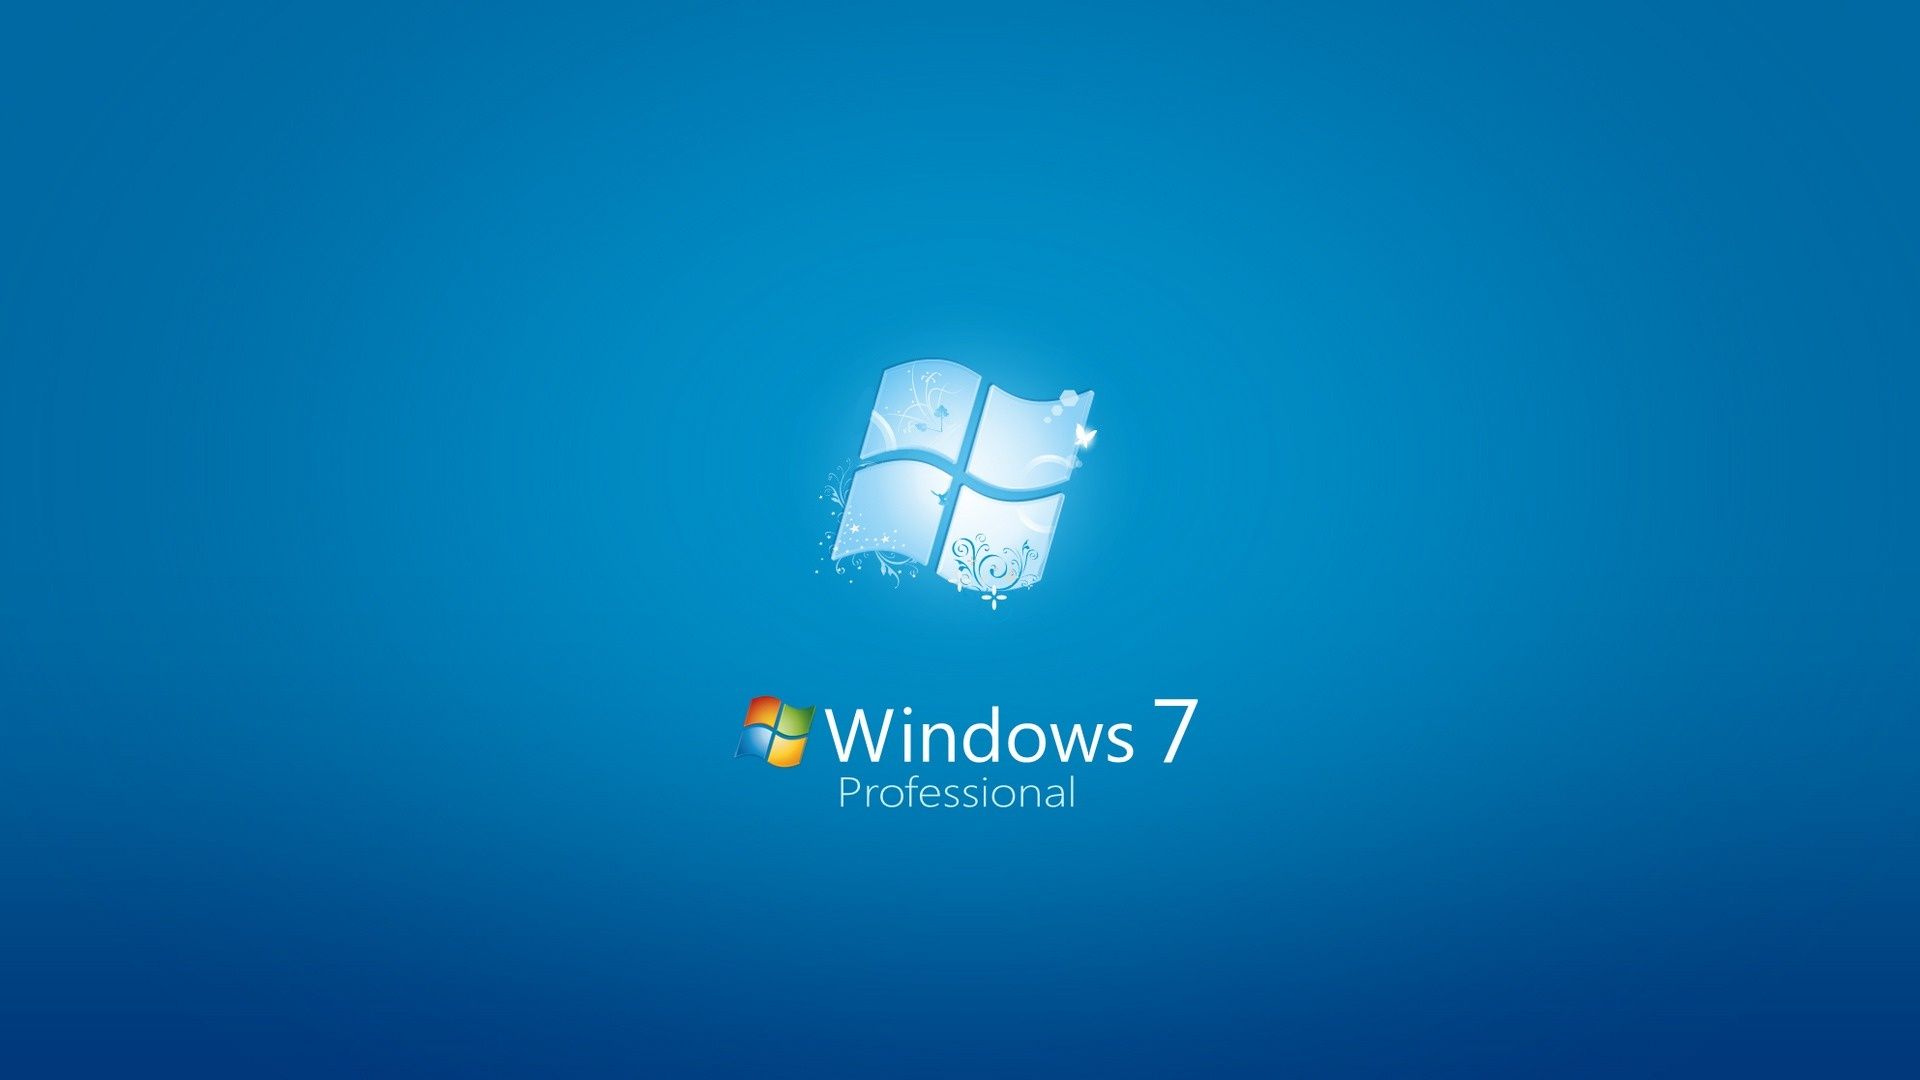 Windows 7 Desktop Wallpaper Widescreen 9915 #4688 Wallpaper | Cool ...